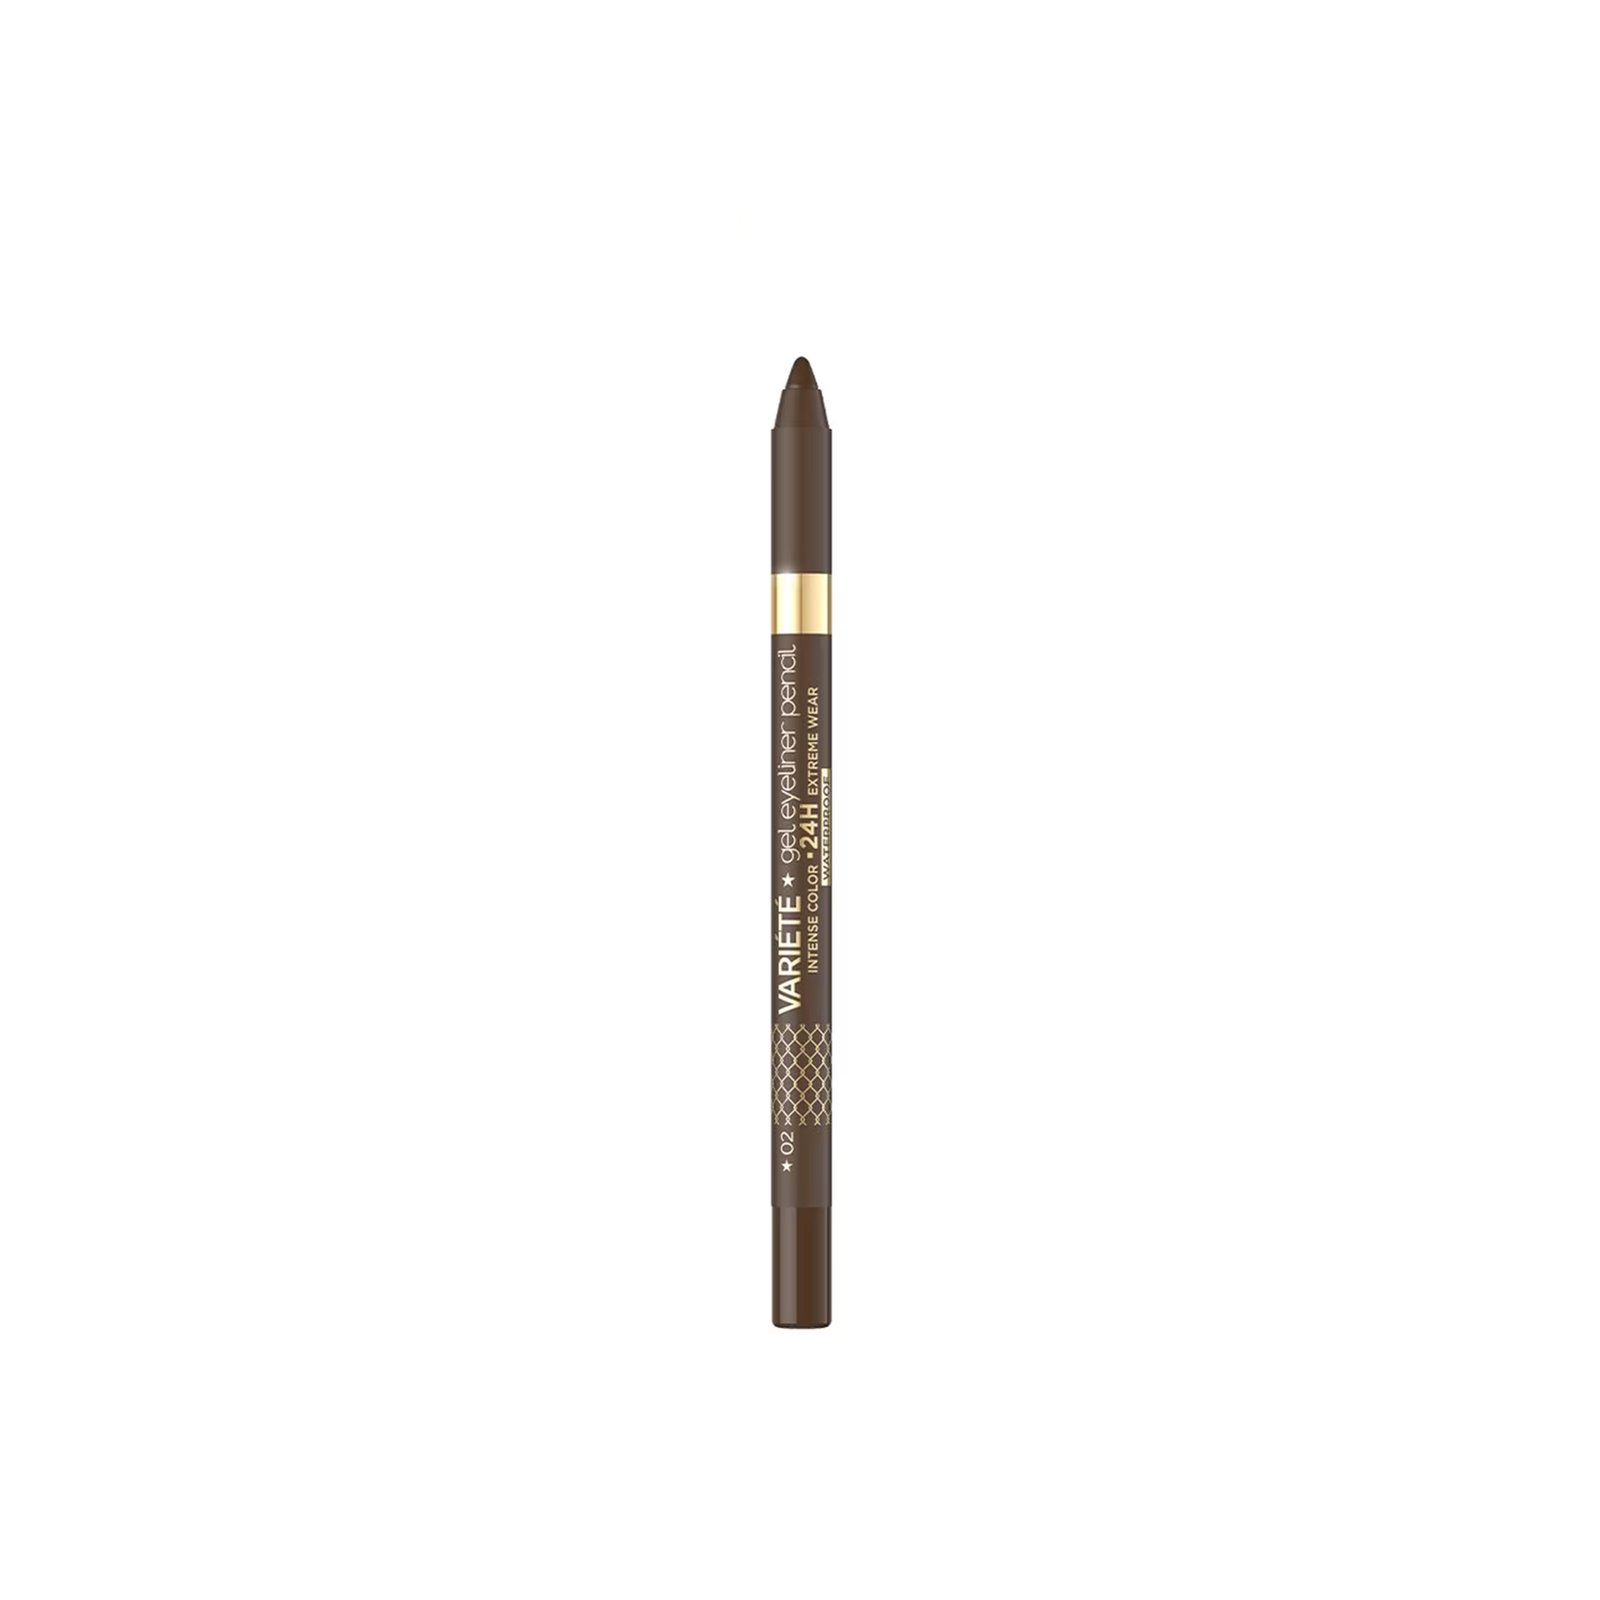 Eveline Cosmetics Variété Gel Eyeliner Pencil 24h Waterproof 02 Brown